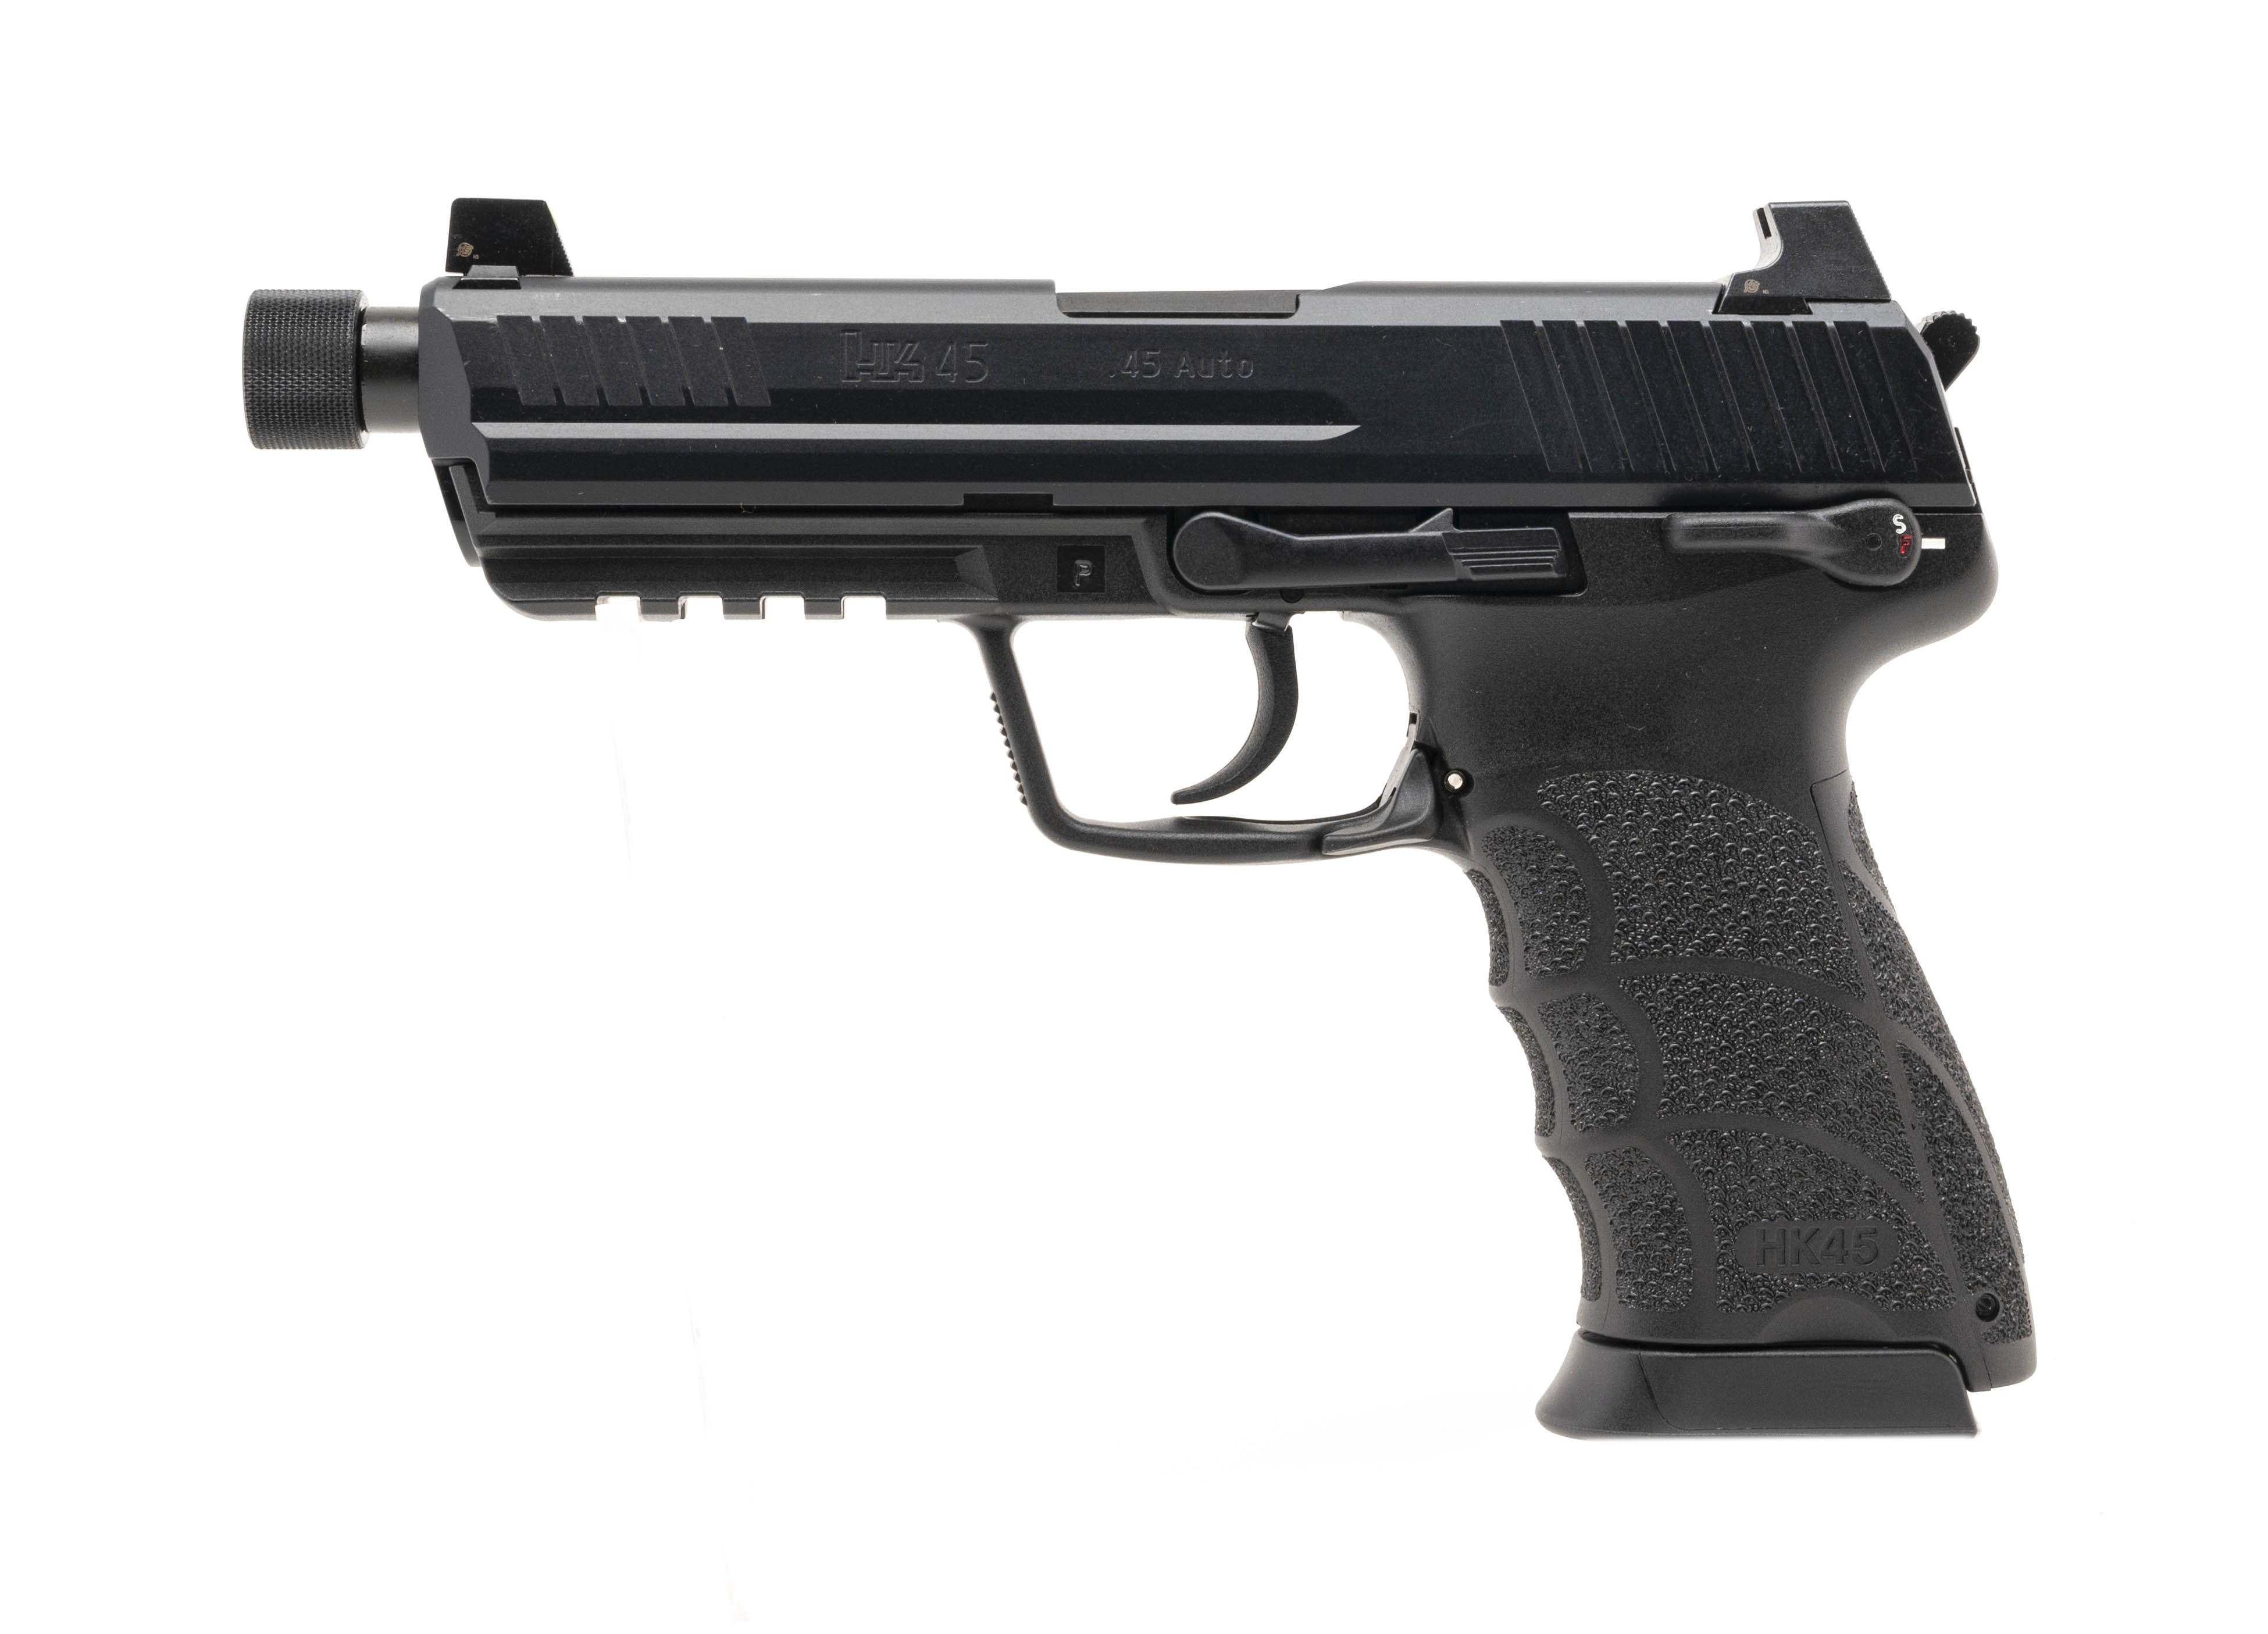 Heckler & Koch HK45 .45 ACP caliber pistol for sale. New